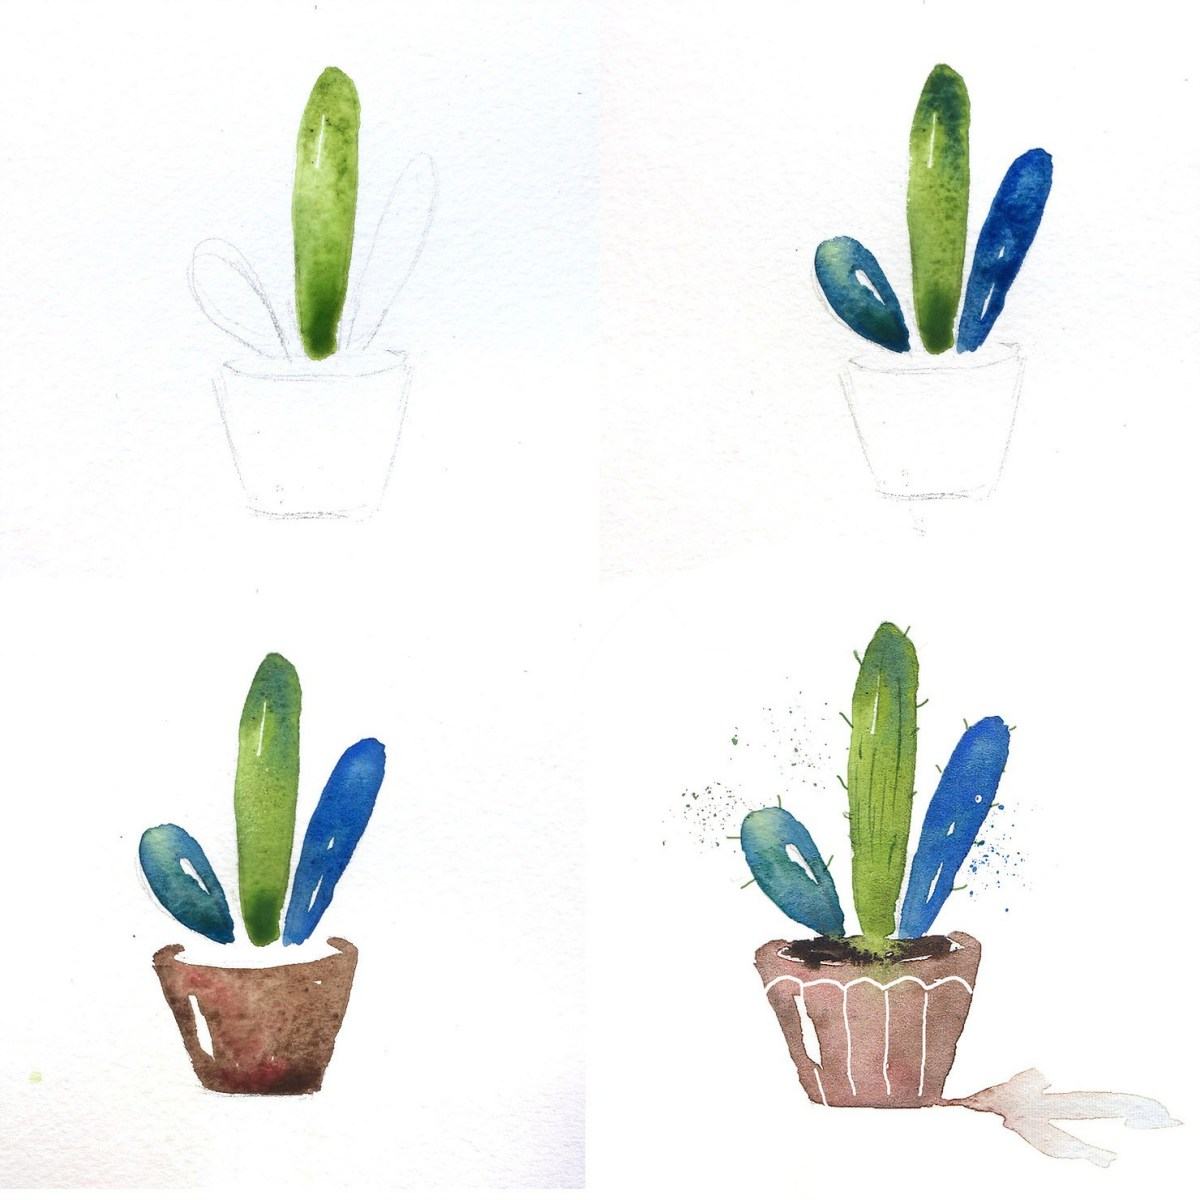 Dreiteiliger Kaktus in Blau und Grün mit Stacheln aus Wasserfarben gestaltet